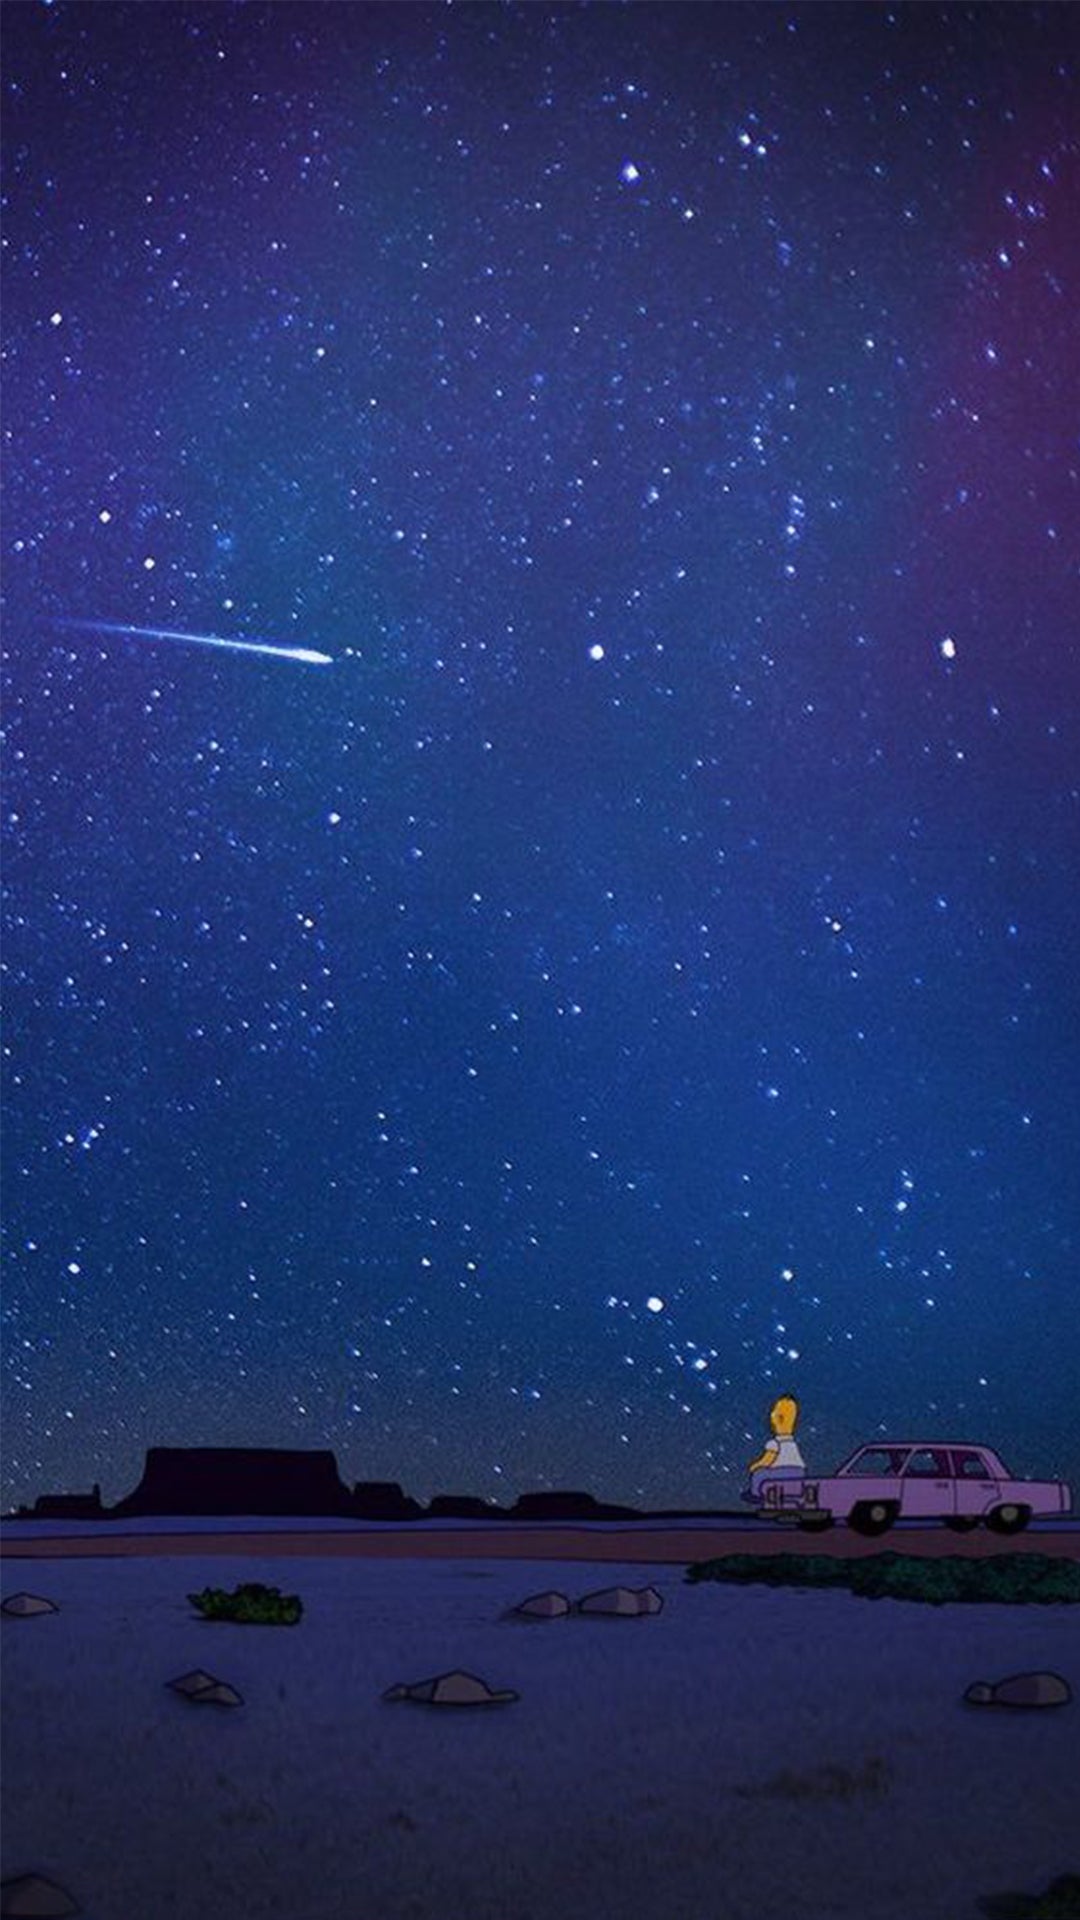 Homer assis sur le capot de sa voiture regarde le ciel étoilé et les étoiles filantes.